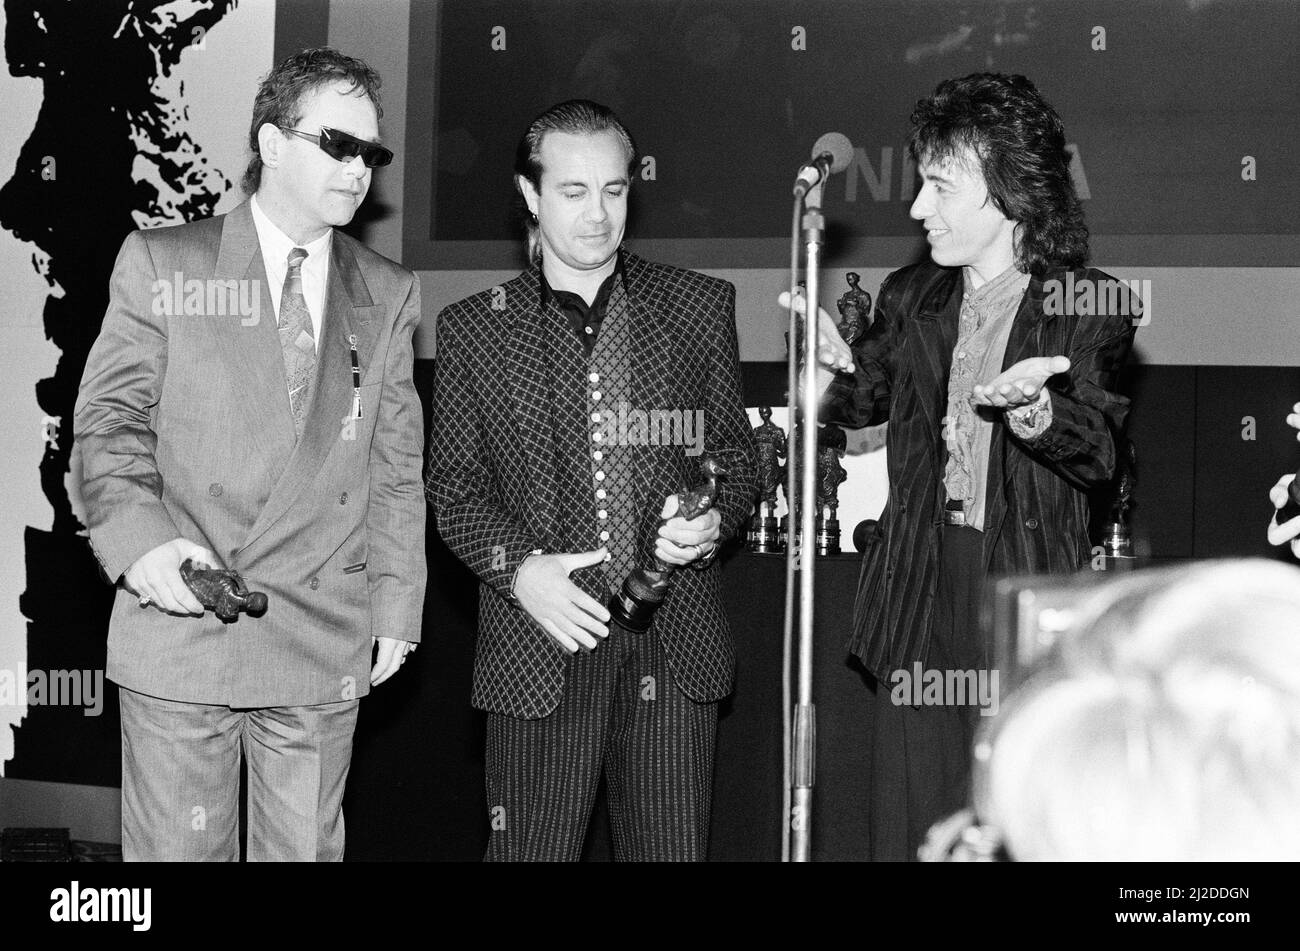 Les prix Ivor Novello à la maison Gorsvenor, Londres. Sur la photo, Elton John, Bernie Taupin et Bill Wyman. 7th avril 1986. Banque D'Images